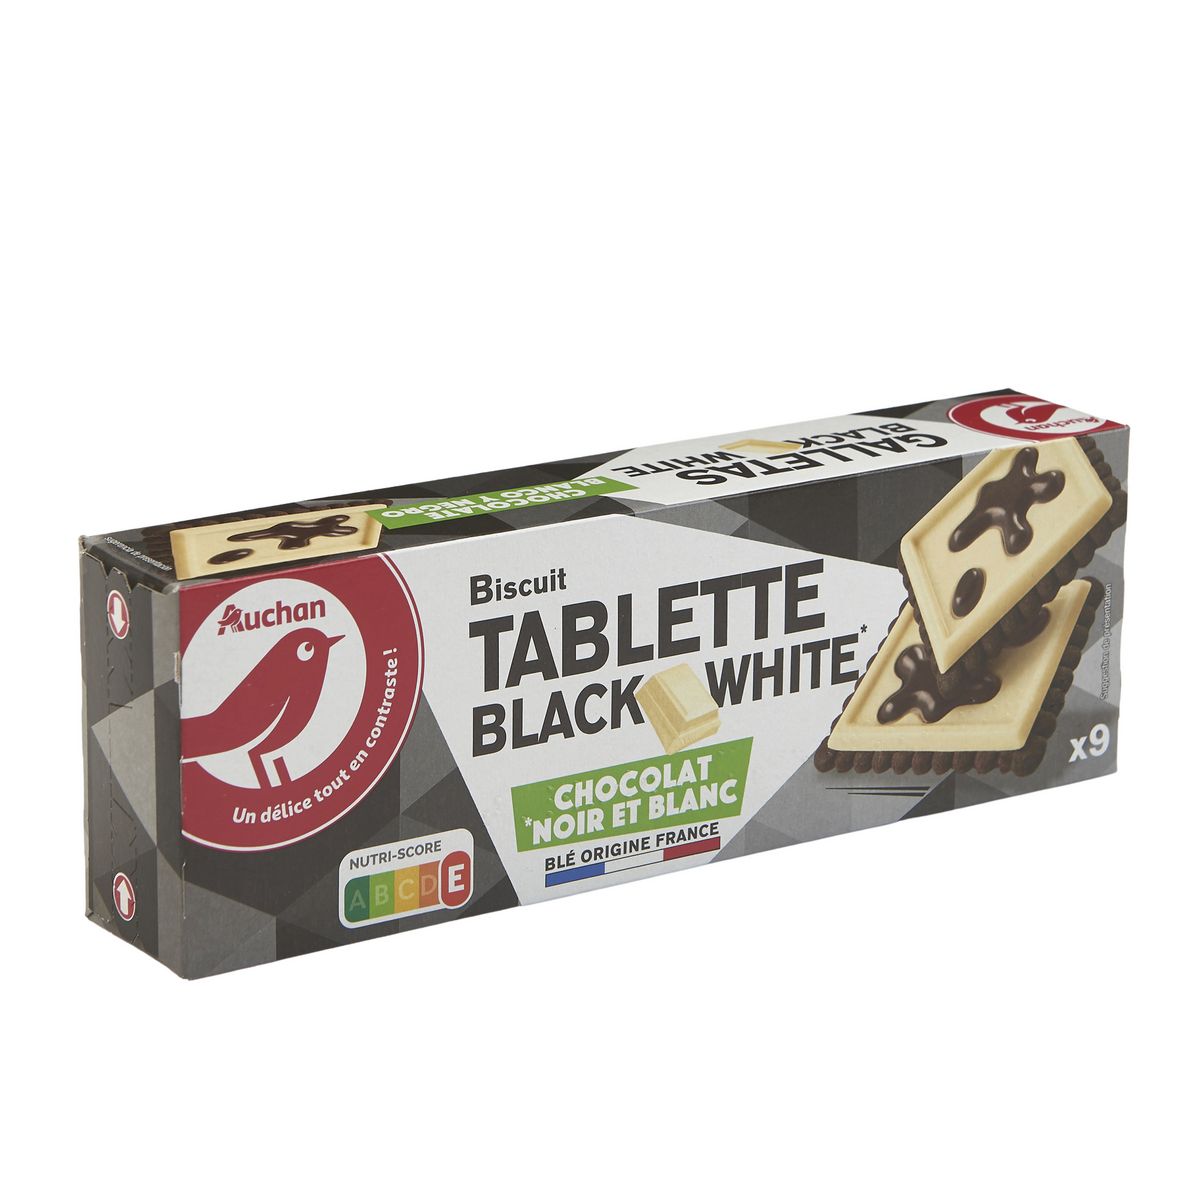 AUCHAN Biscuits cacaoté avec tablette de chocolat blanc et noir 9 biscuits 115g